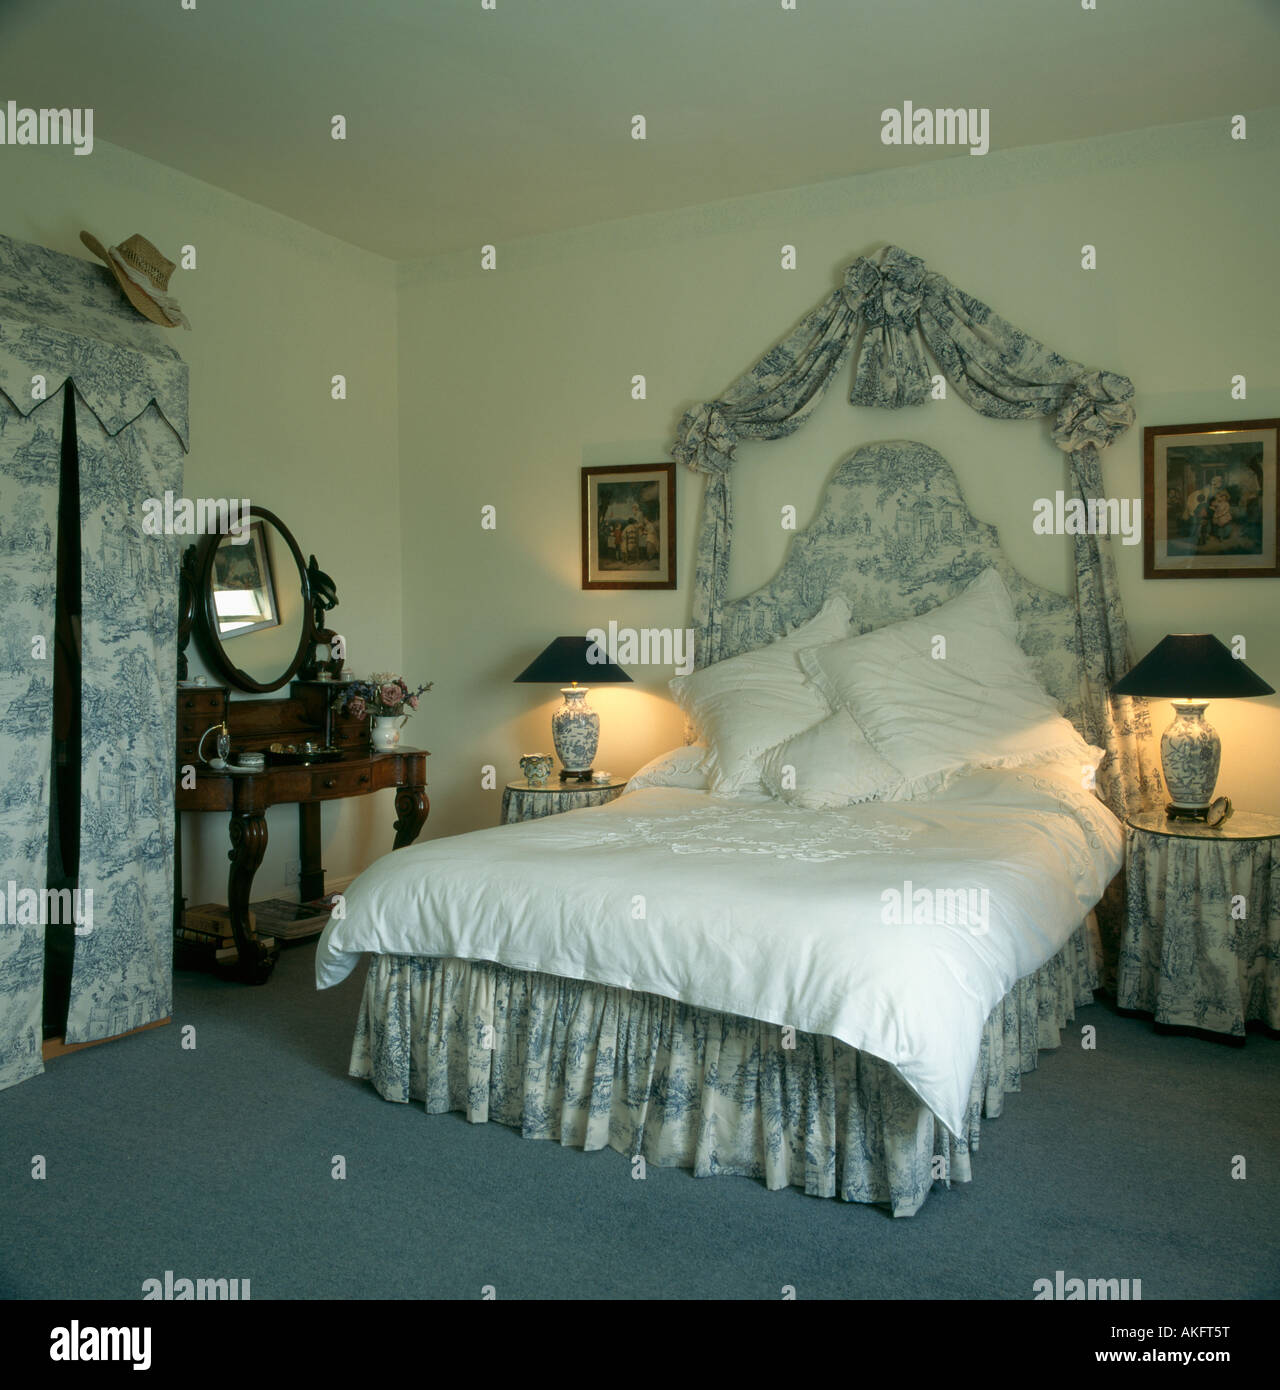 Lit avec toile de Jouy bleu tissu drapé au-dessus de lit correspondant et  valence dans chambre avec des lampes allumées Photo Stock - Alamy